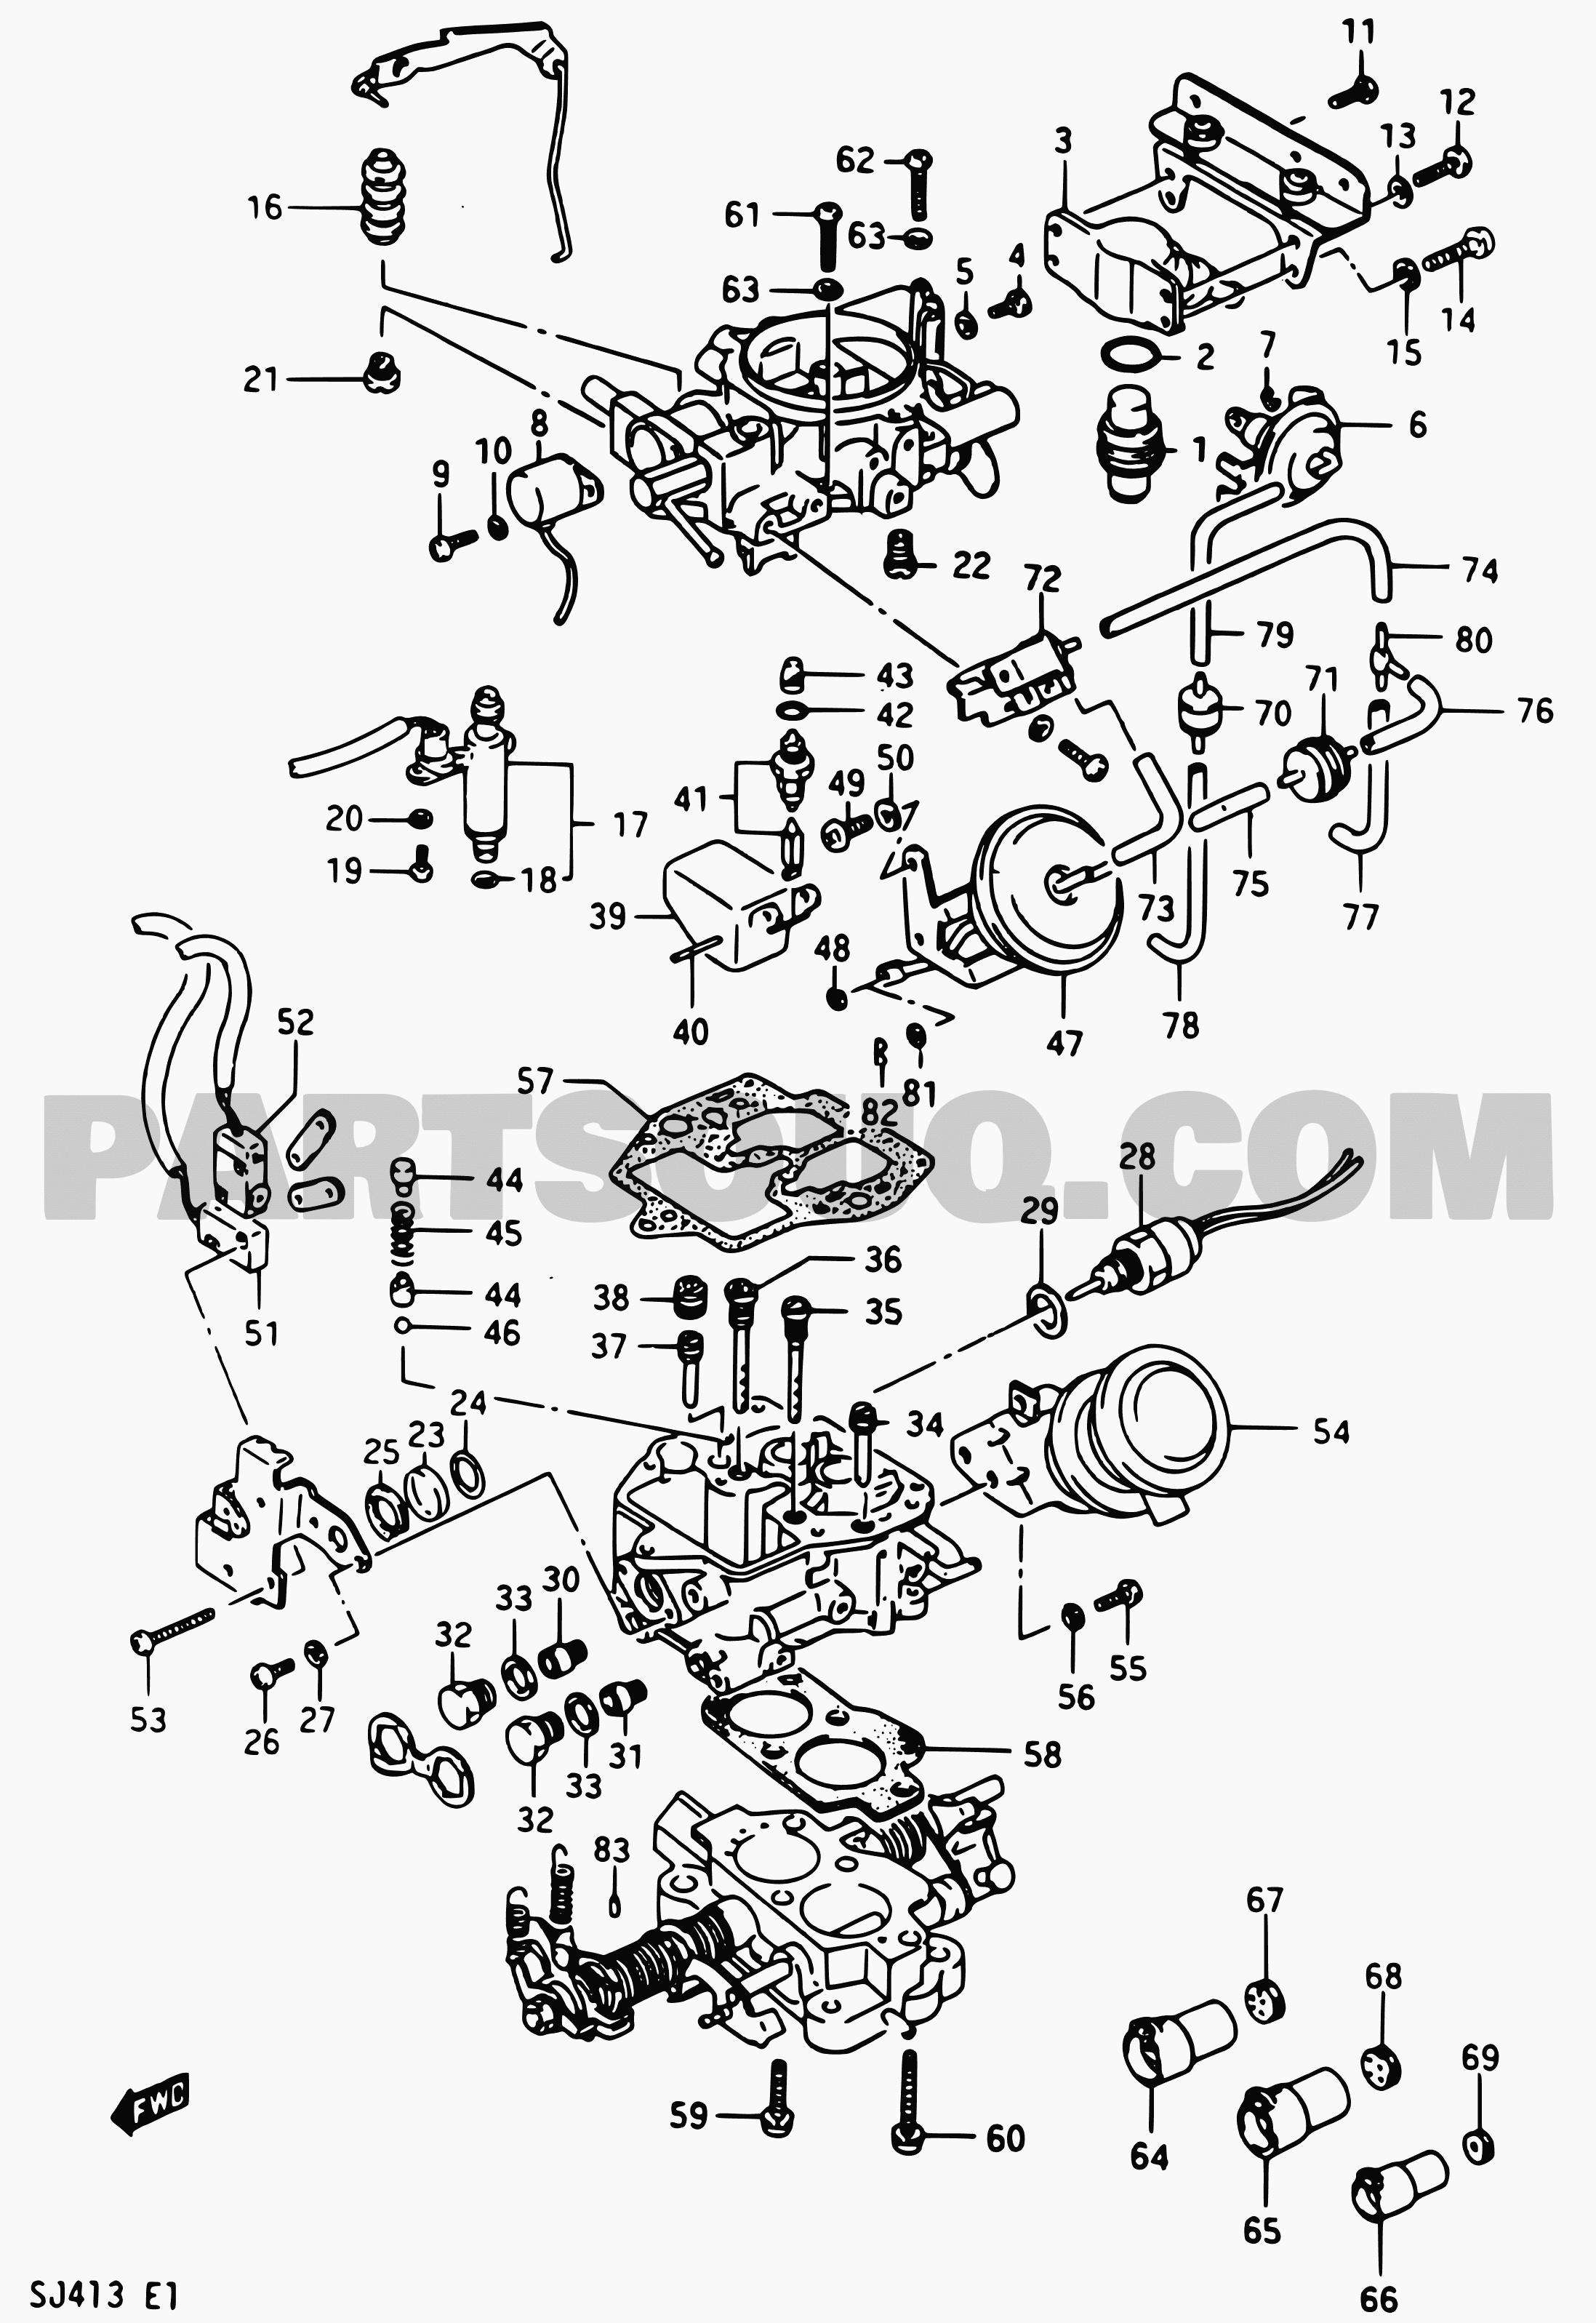 34 Suzuki Samurai Carburetor Diagram - Wiring Diagram Database